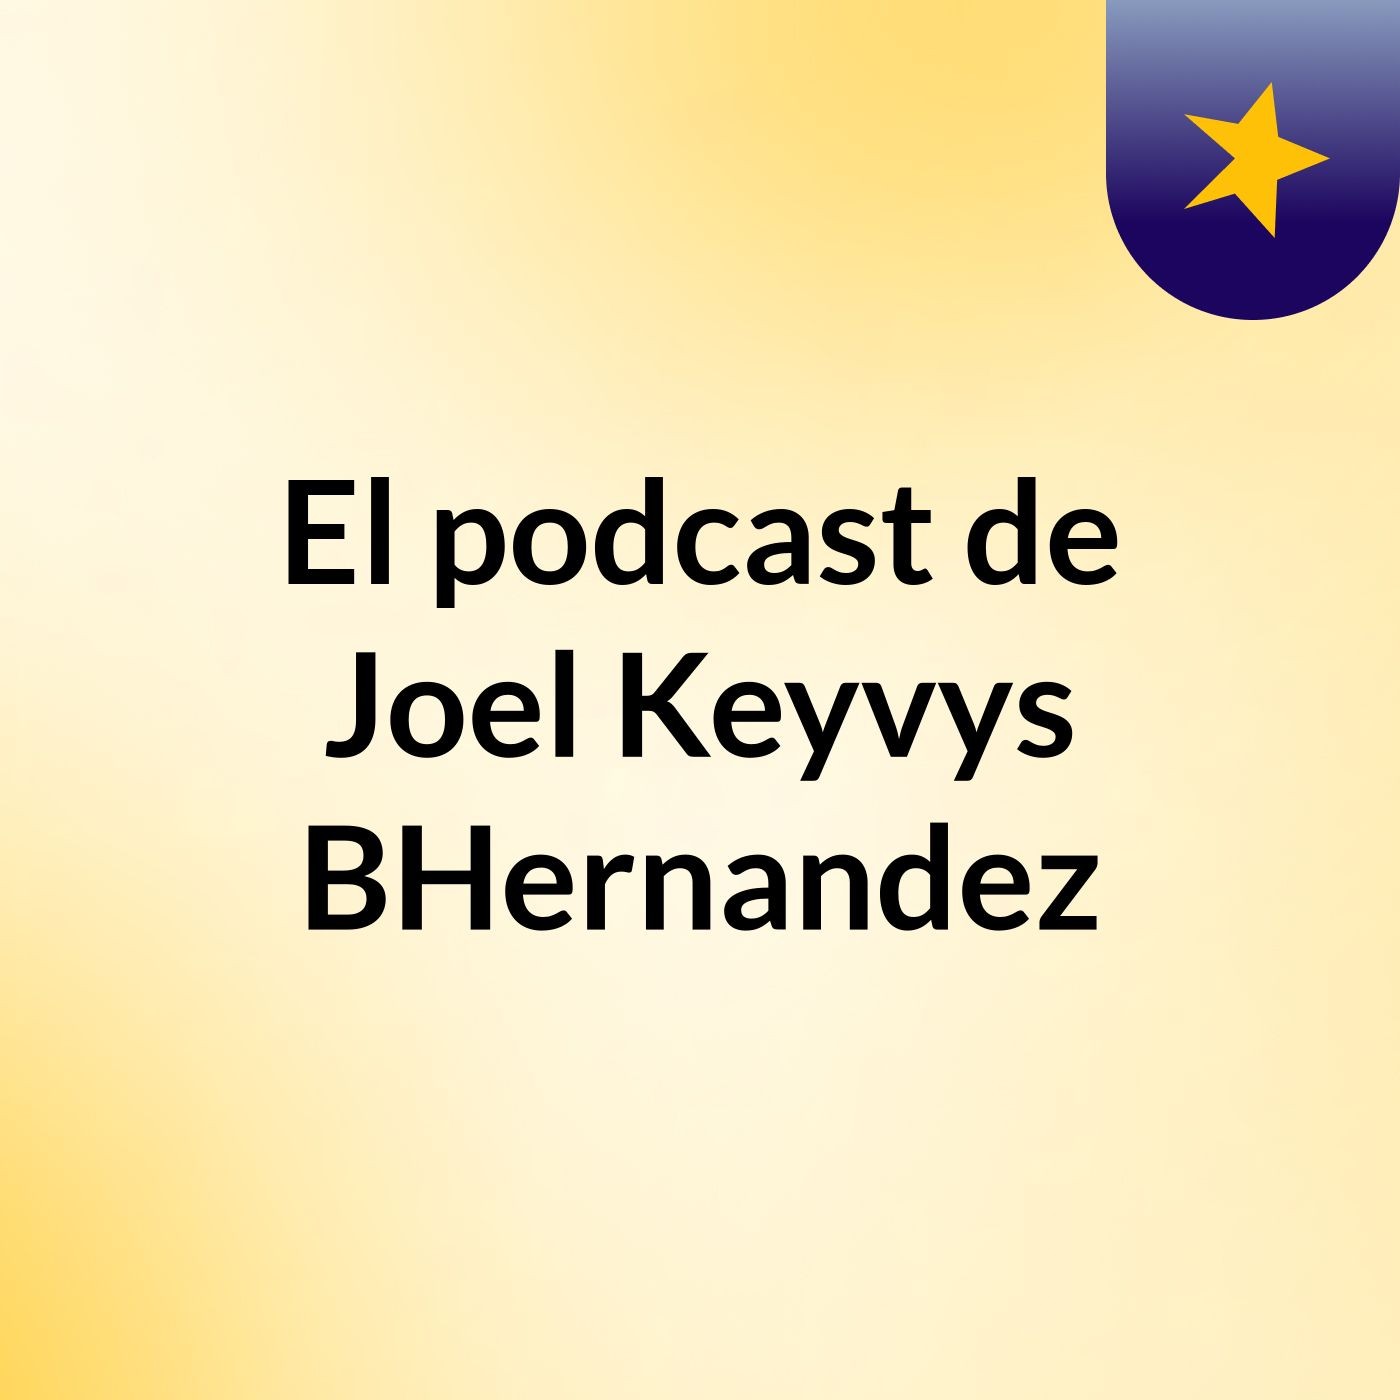 El podcast de Joel Keyvys BHernandez